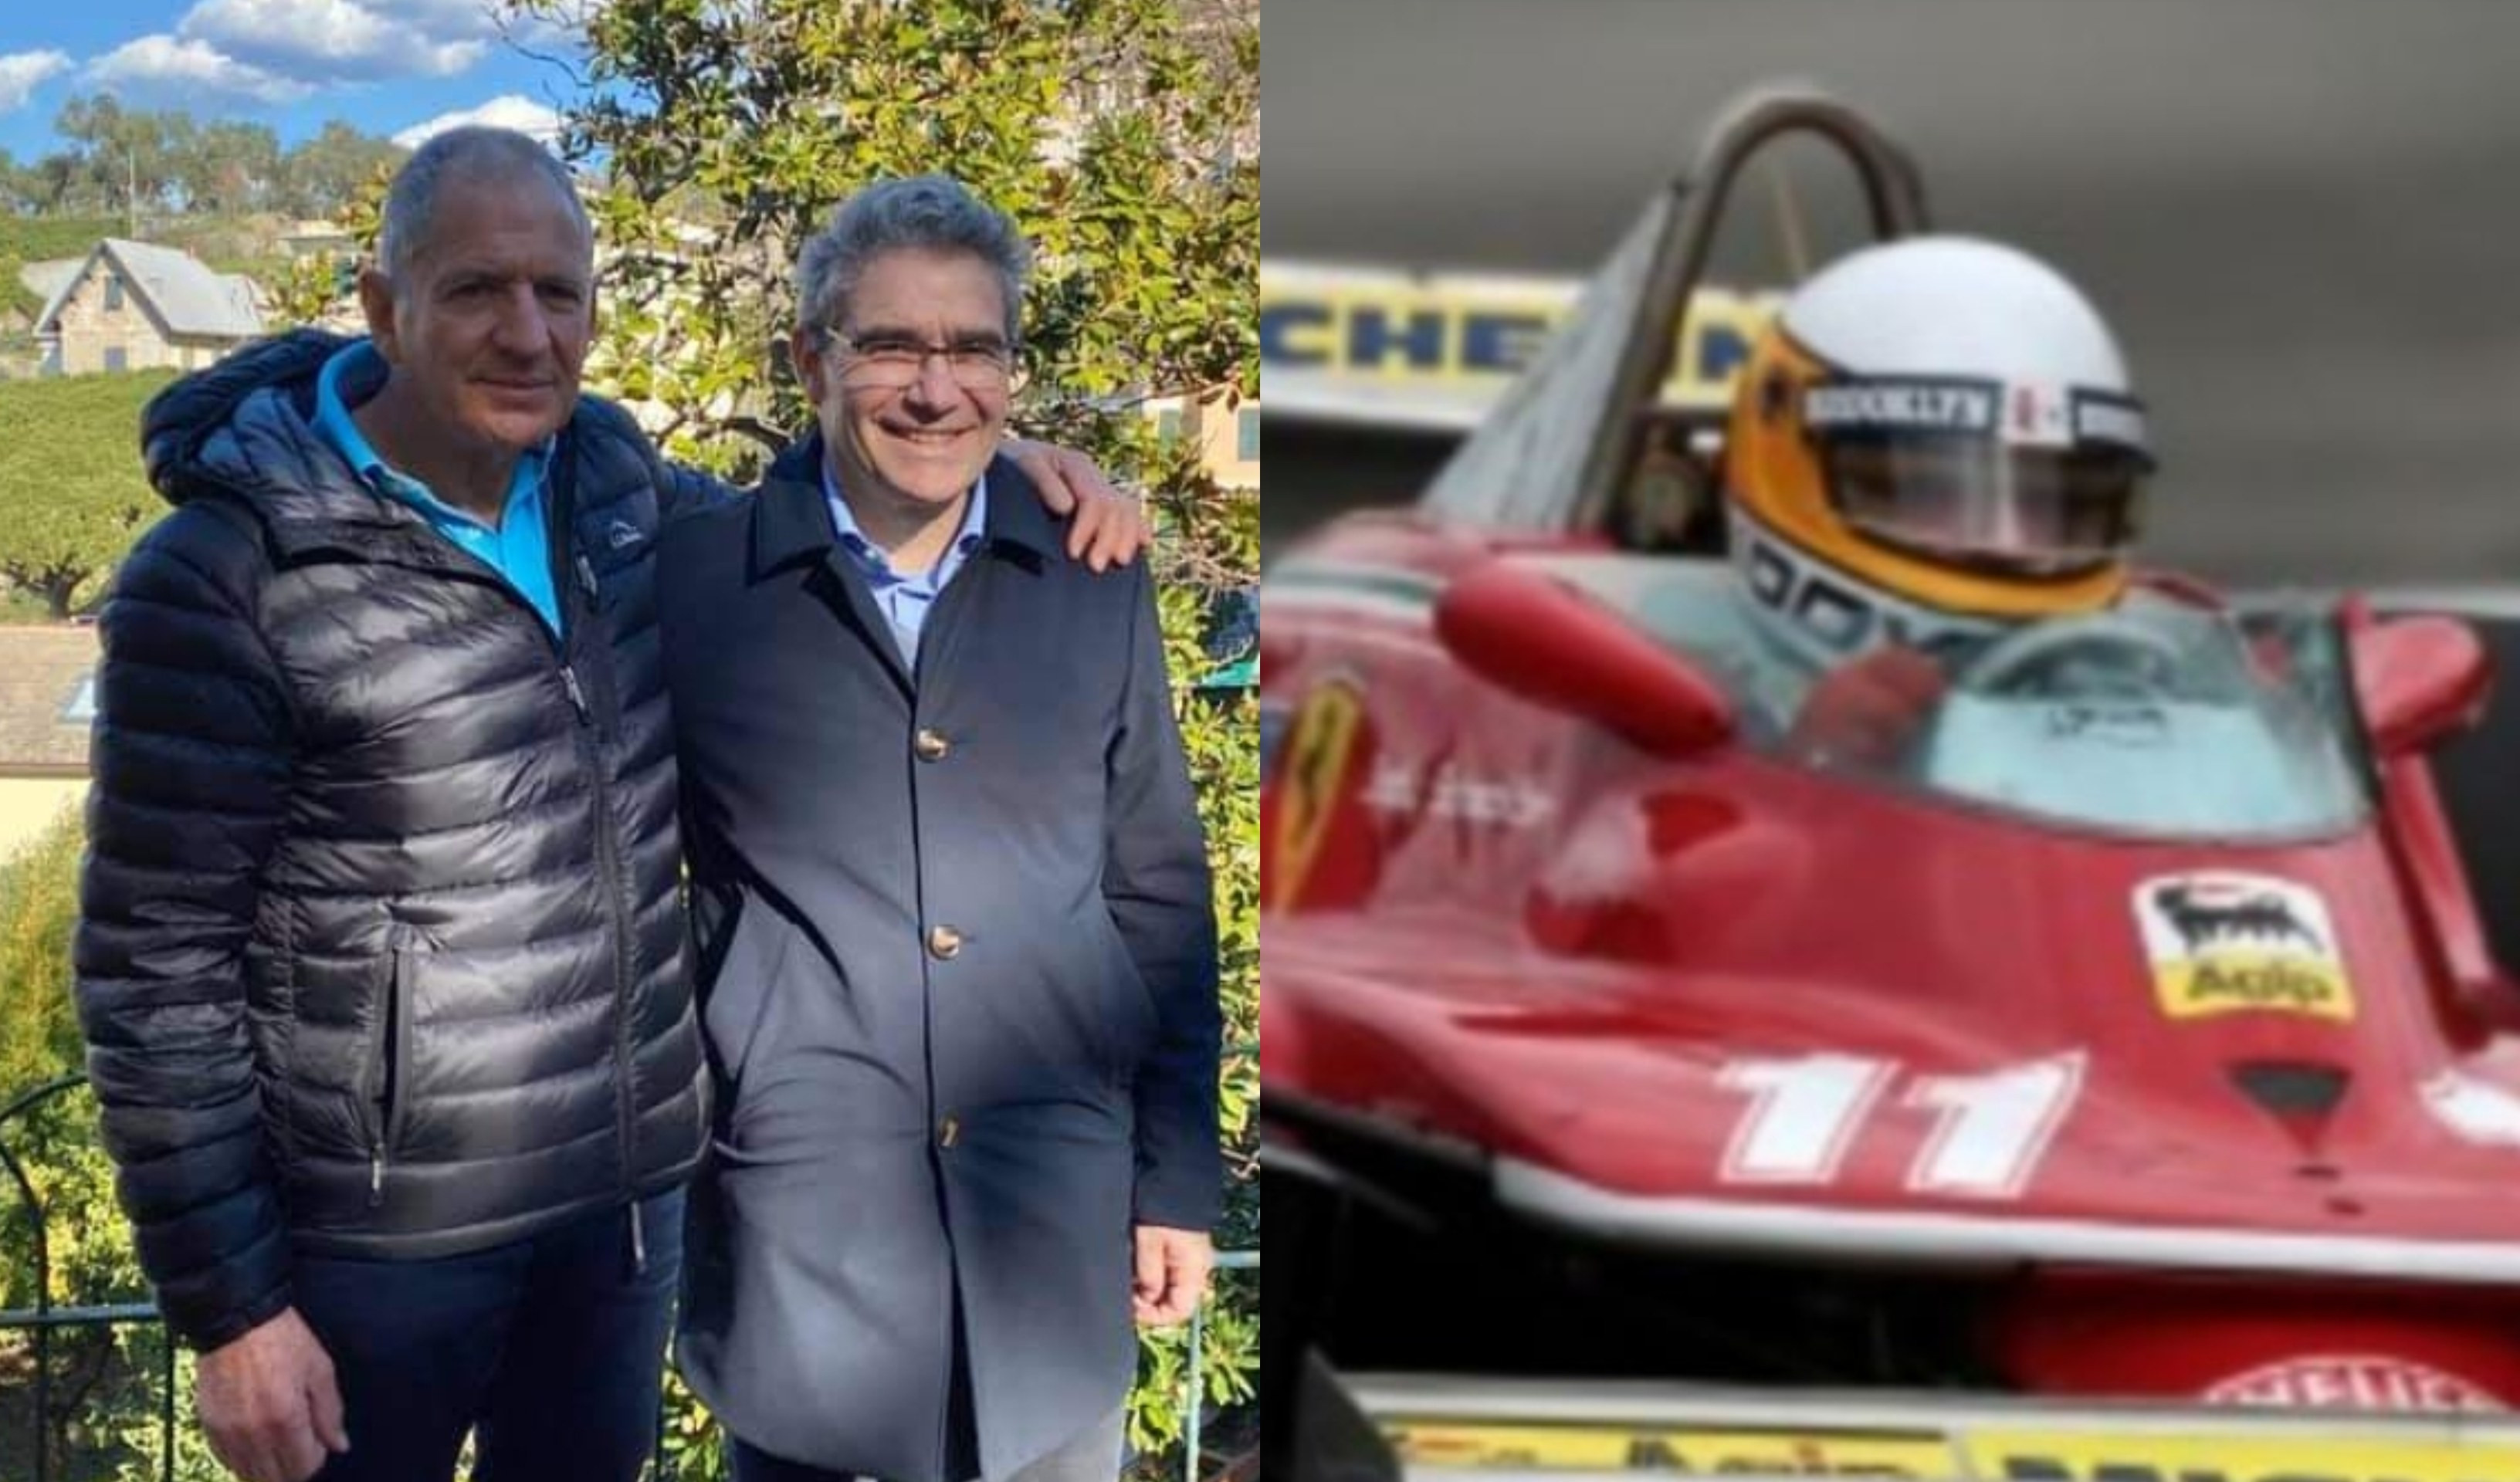 L'ex campione della Ferrari Jody Scheckter acquista villa a Recco